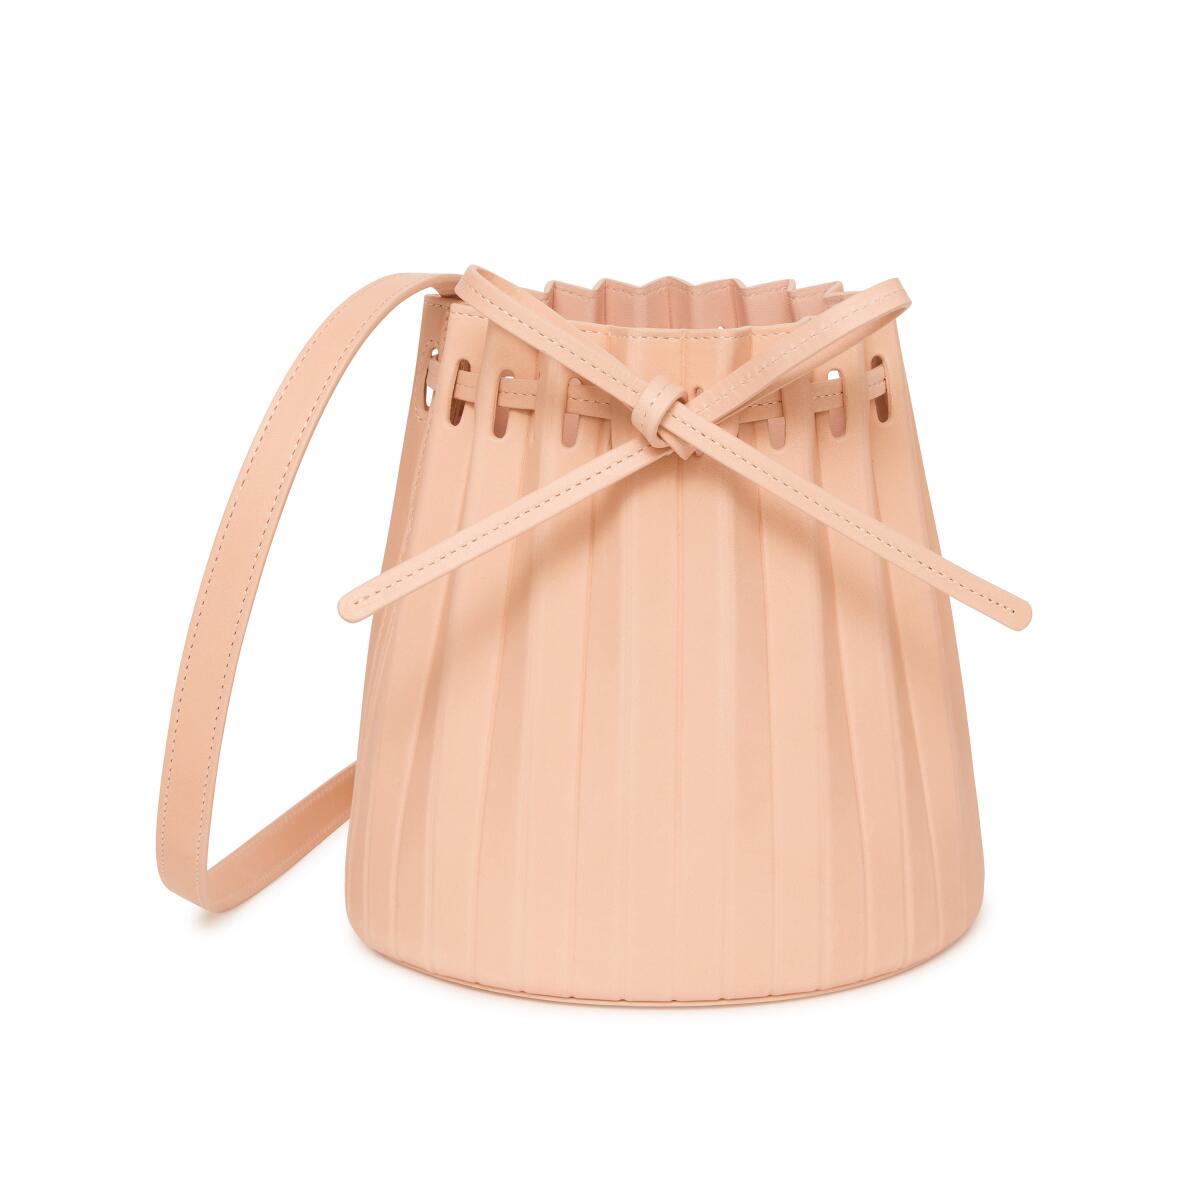 Mansur Gavriel's mini pleated bucket bag in rosa.